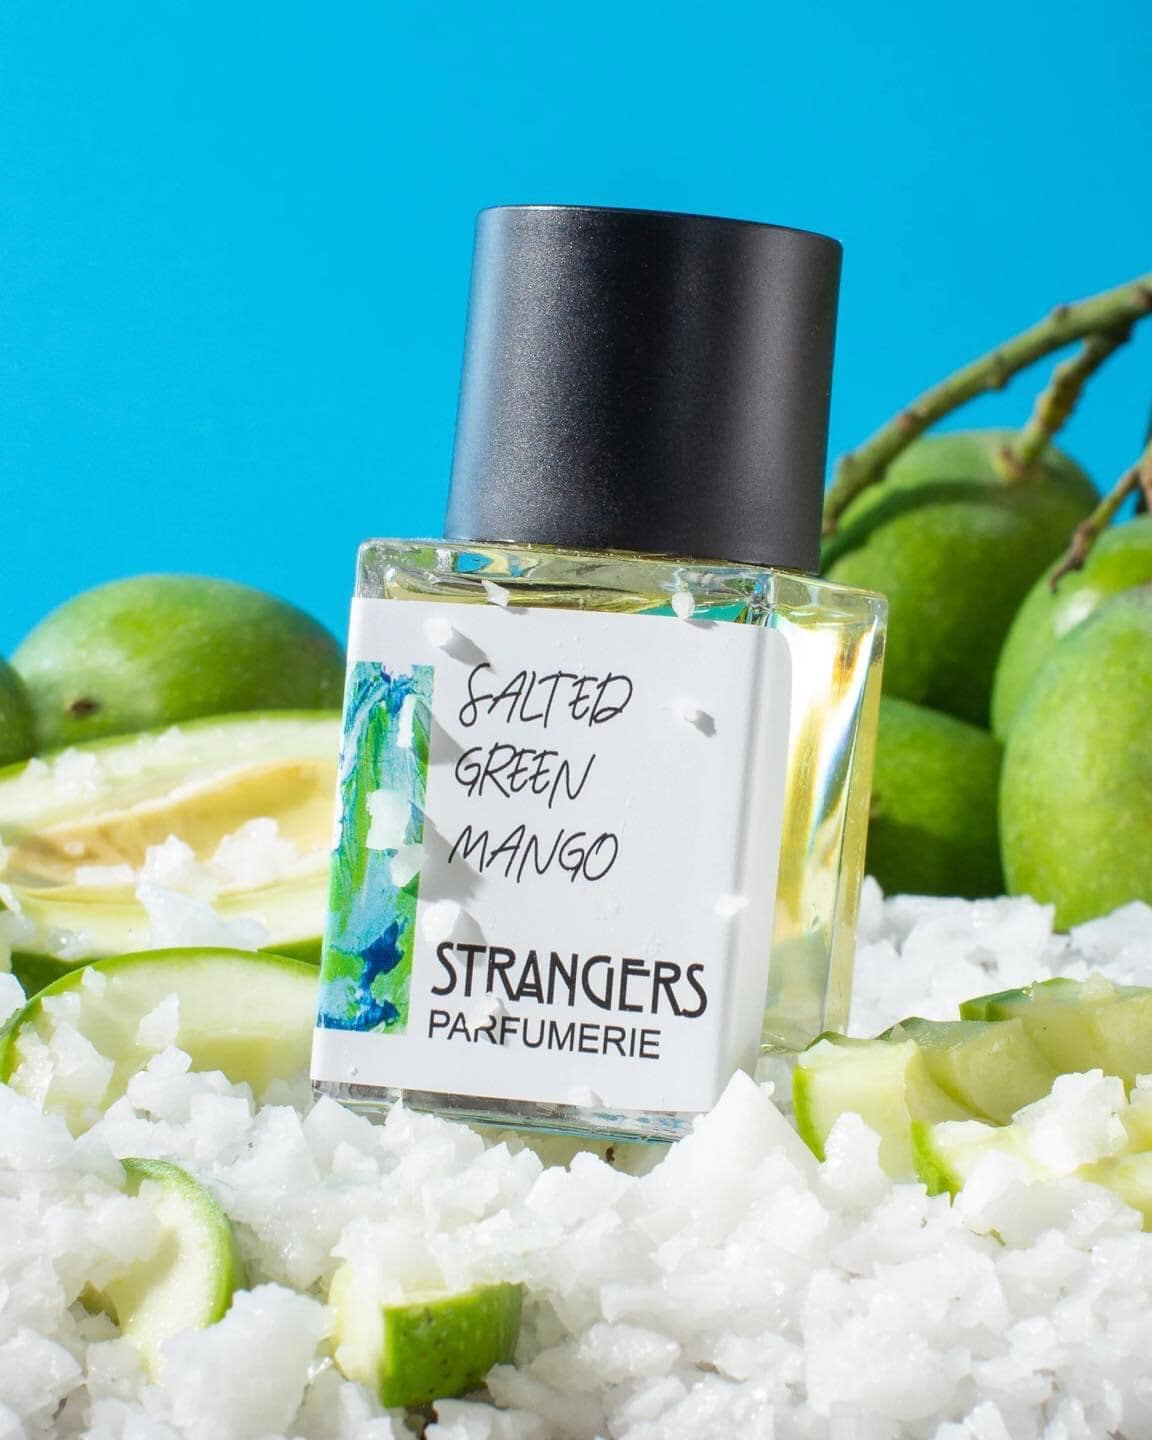 Strangers Parfumerie Salted Green Mango 1 - Nuochoarosa.com - Nước hoa cao cấp, chính hãng giá tốt, mẫu mới